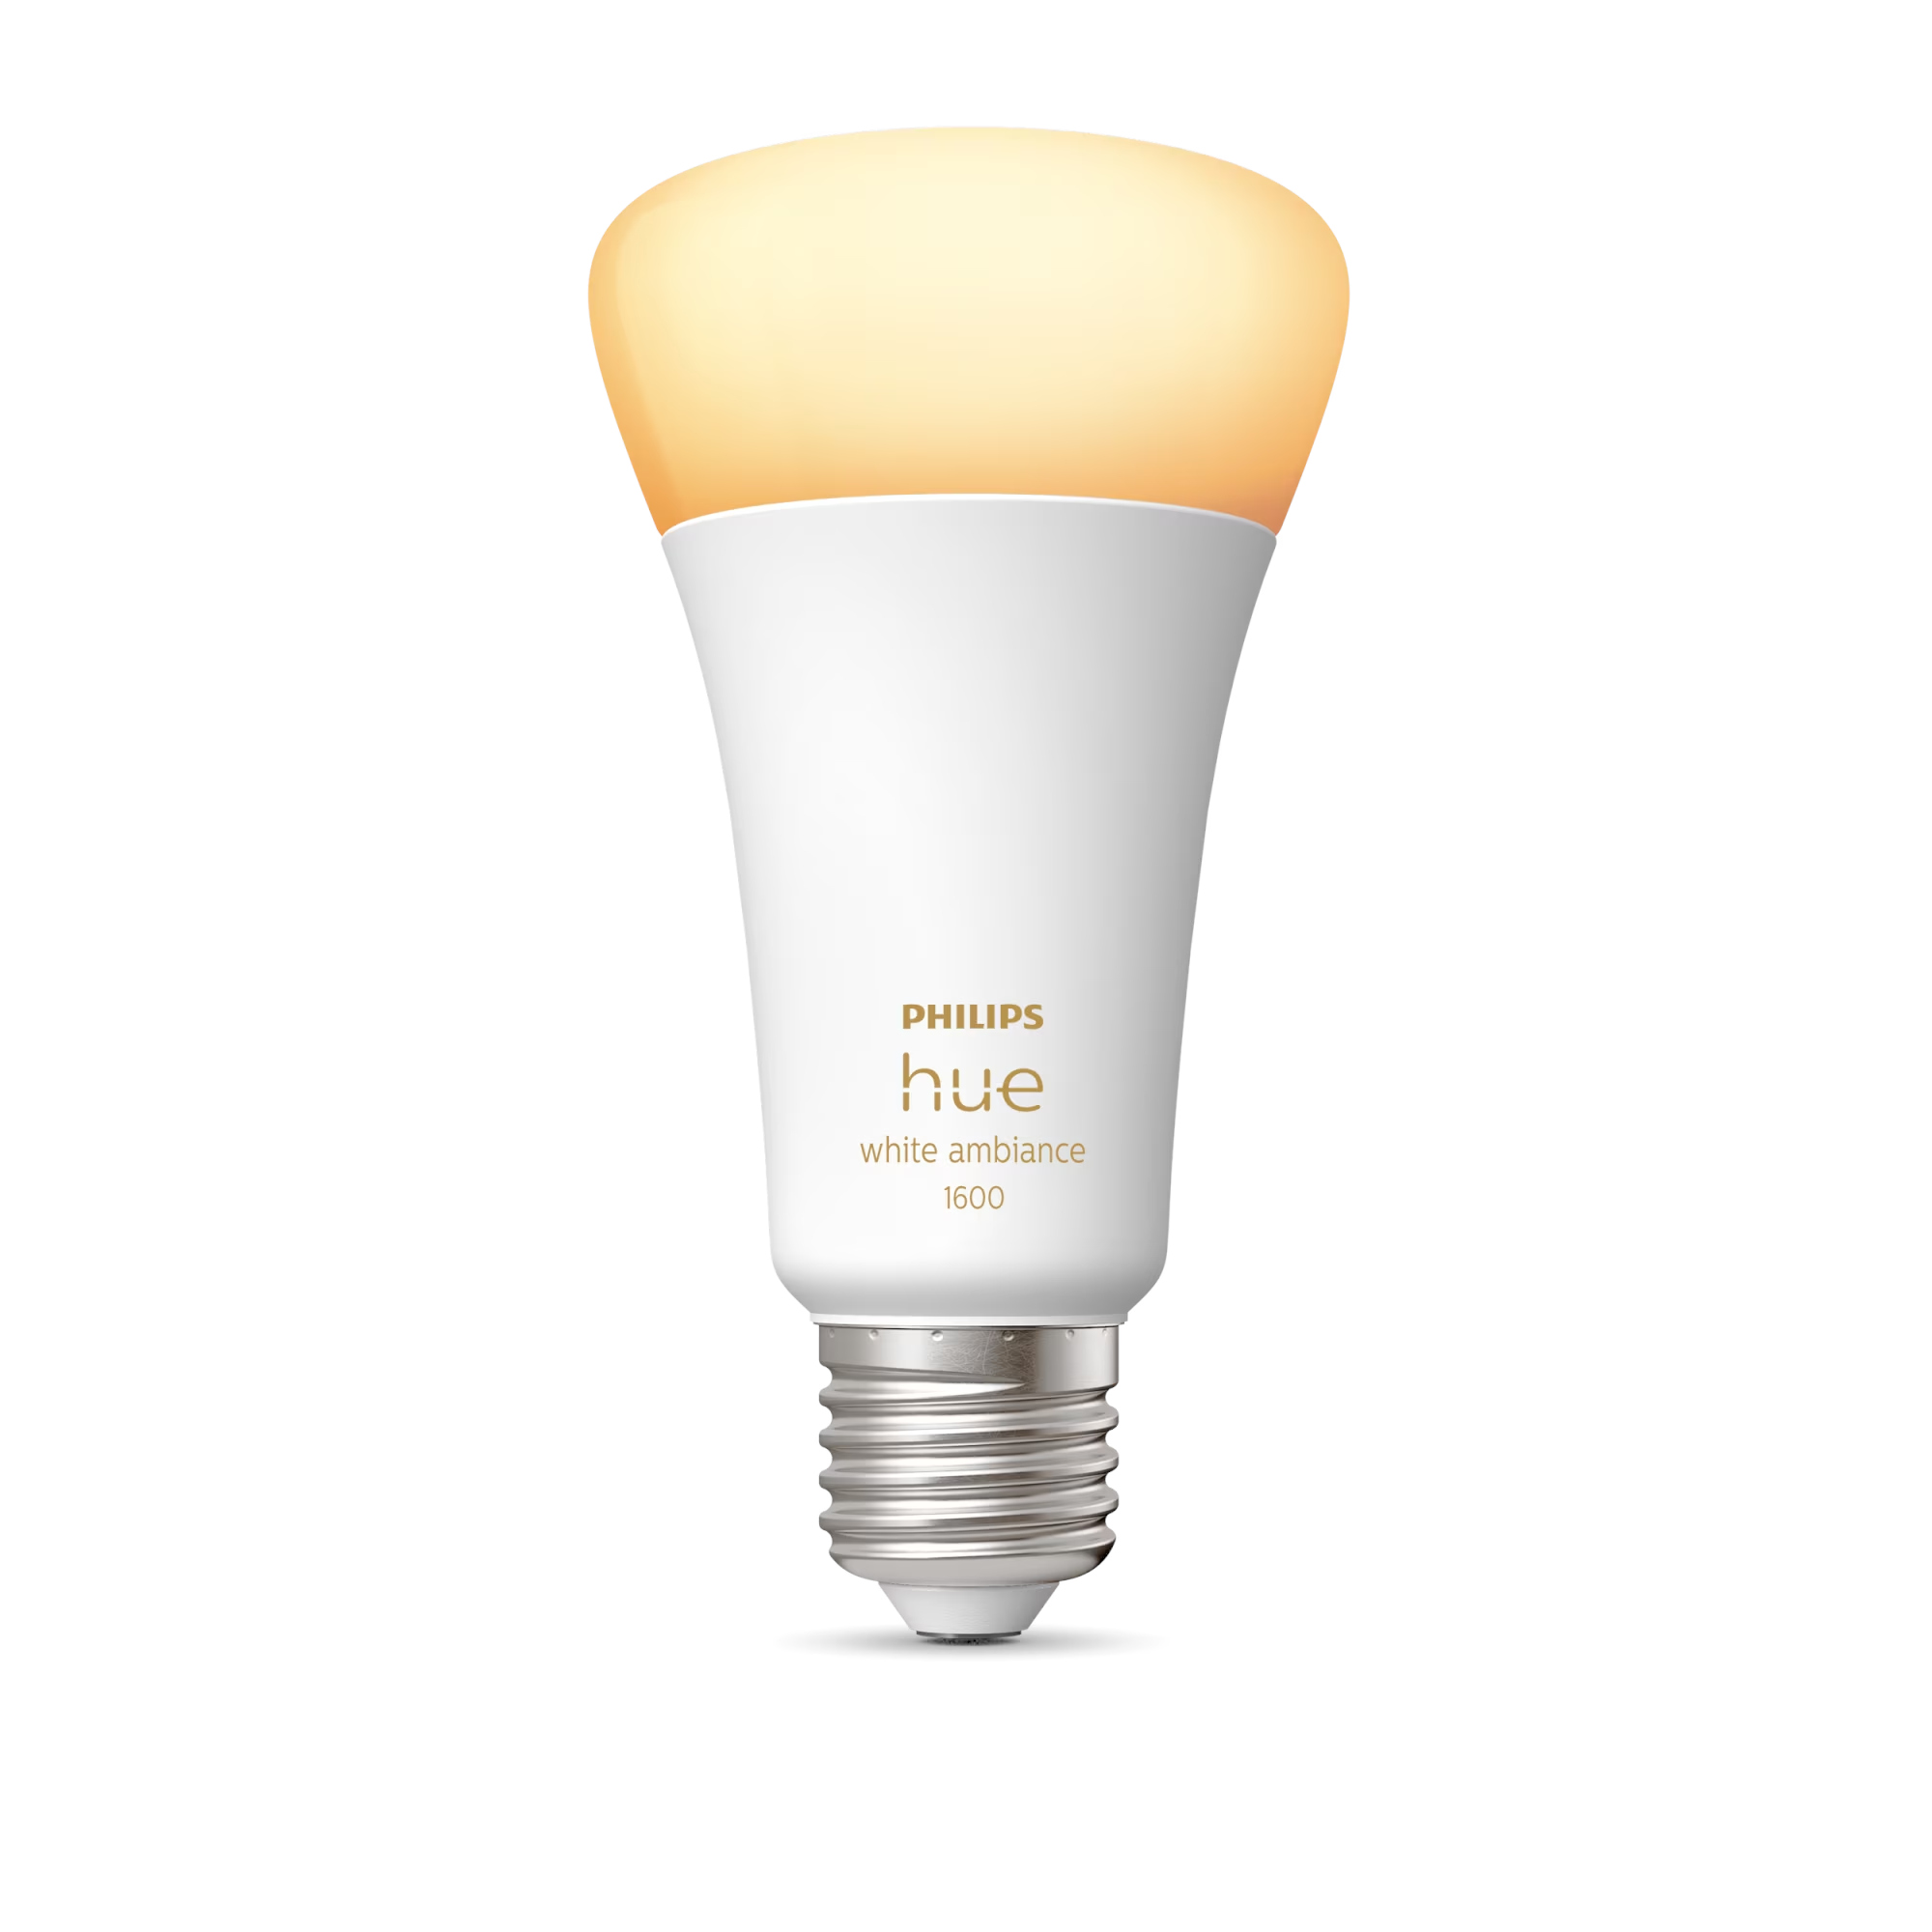 Bec LED Smart Philips Hue, E27, 13W (100W), 1600 lm, Lumina alba, Reglabil, Bluetooth